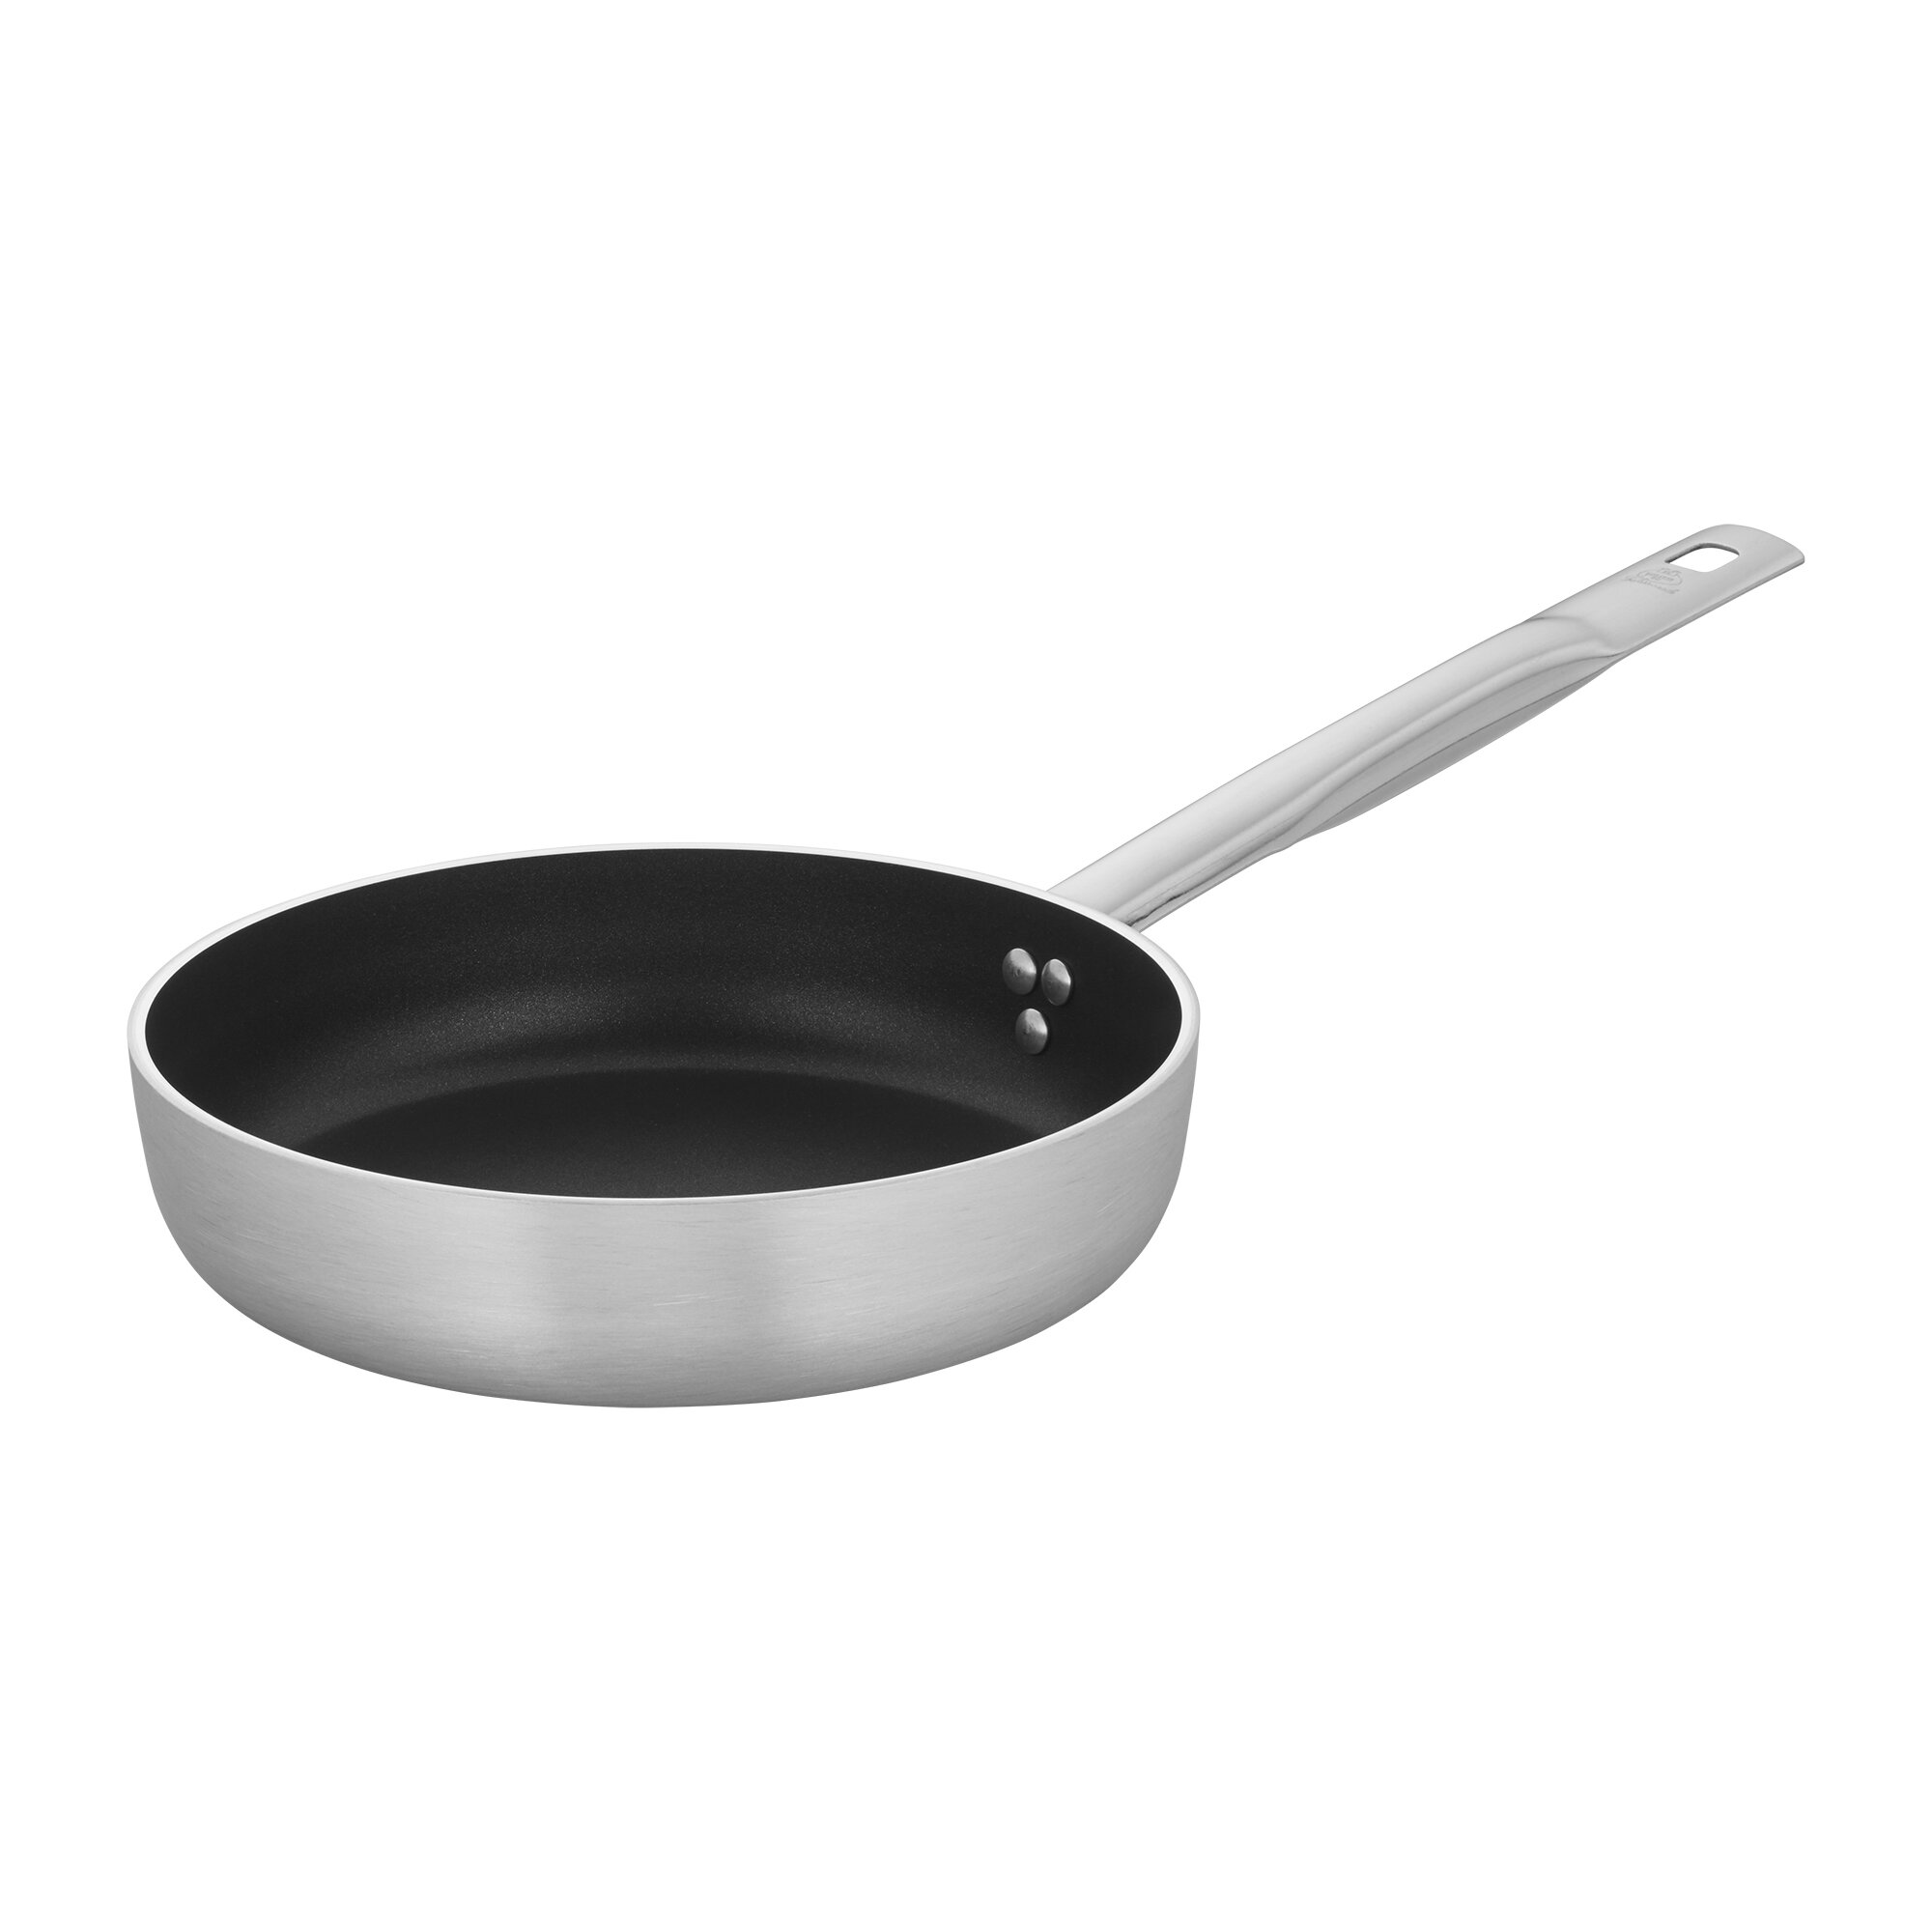 Buy BALLARINI Avola Frying pan